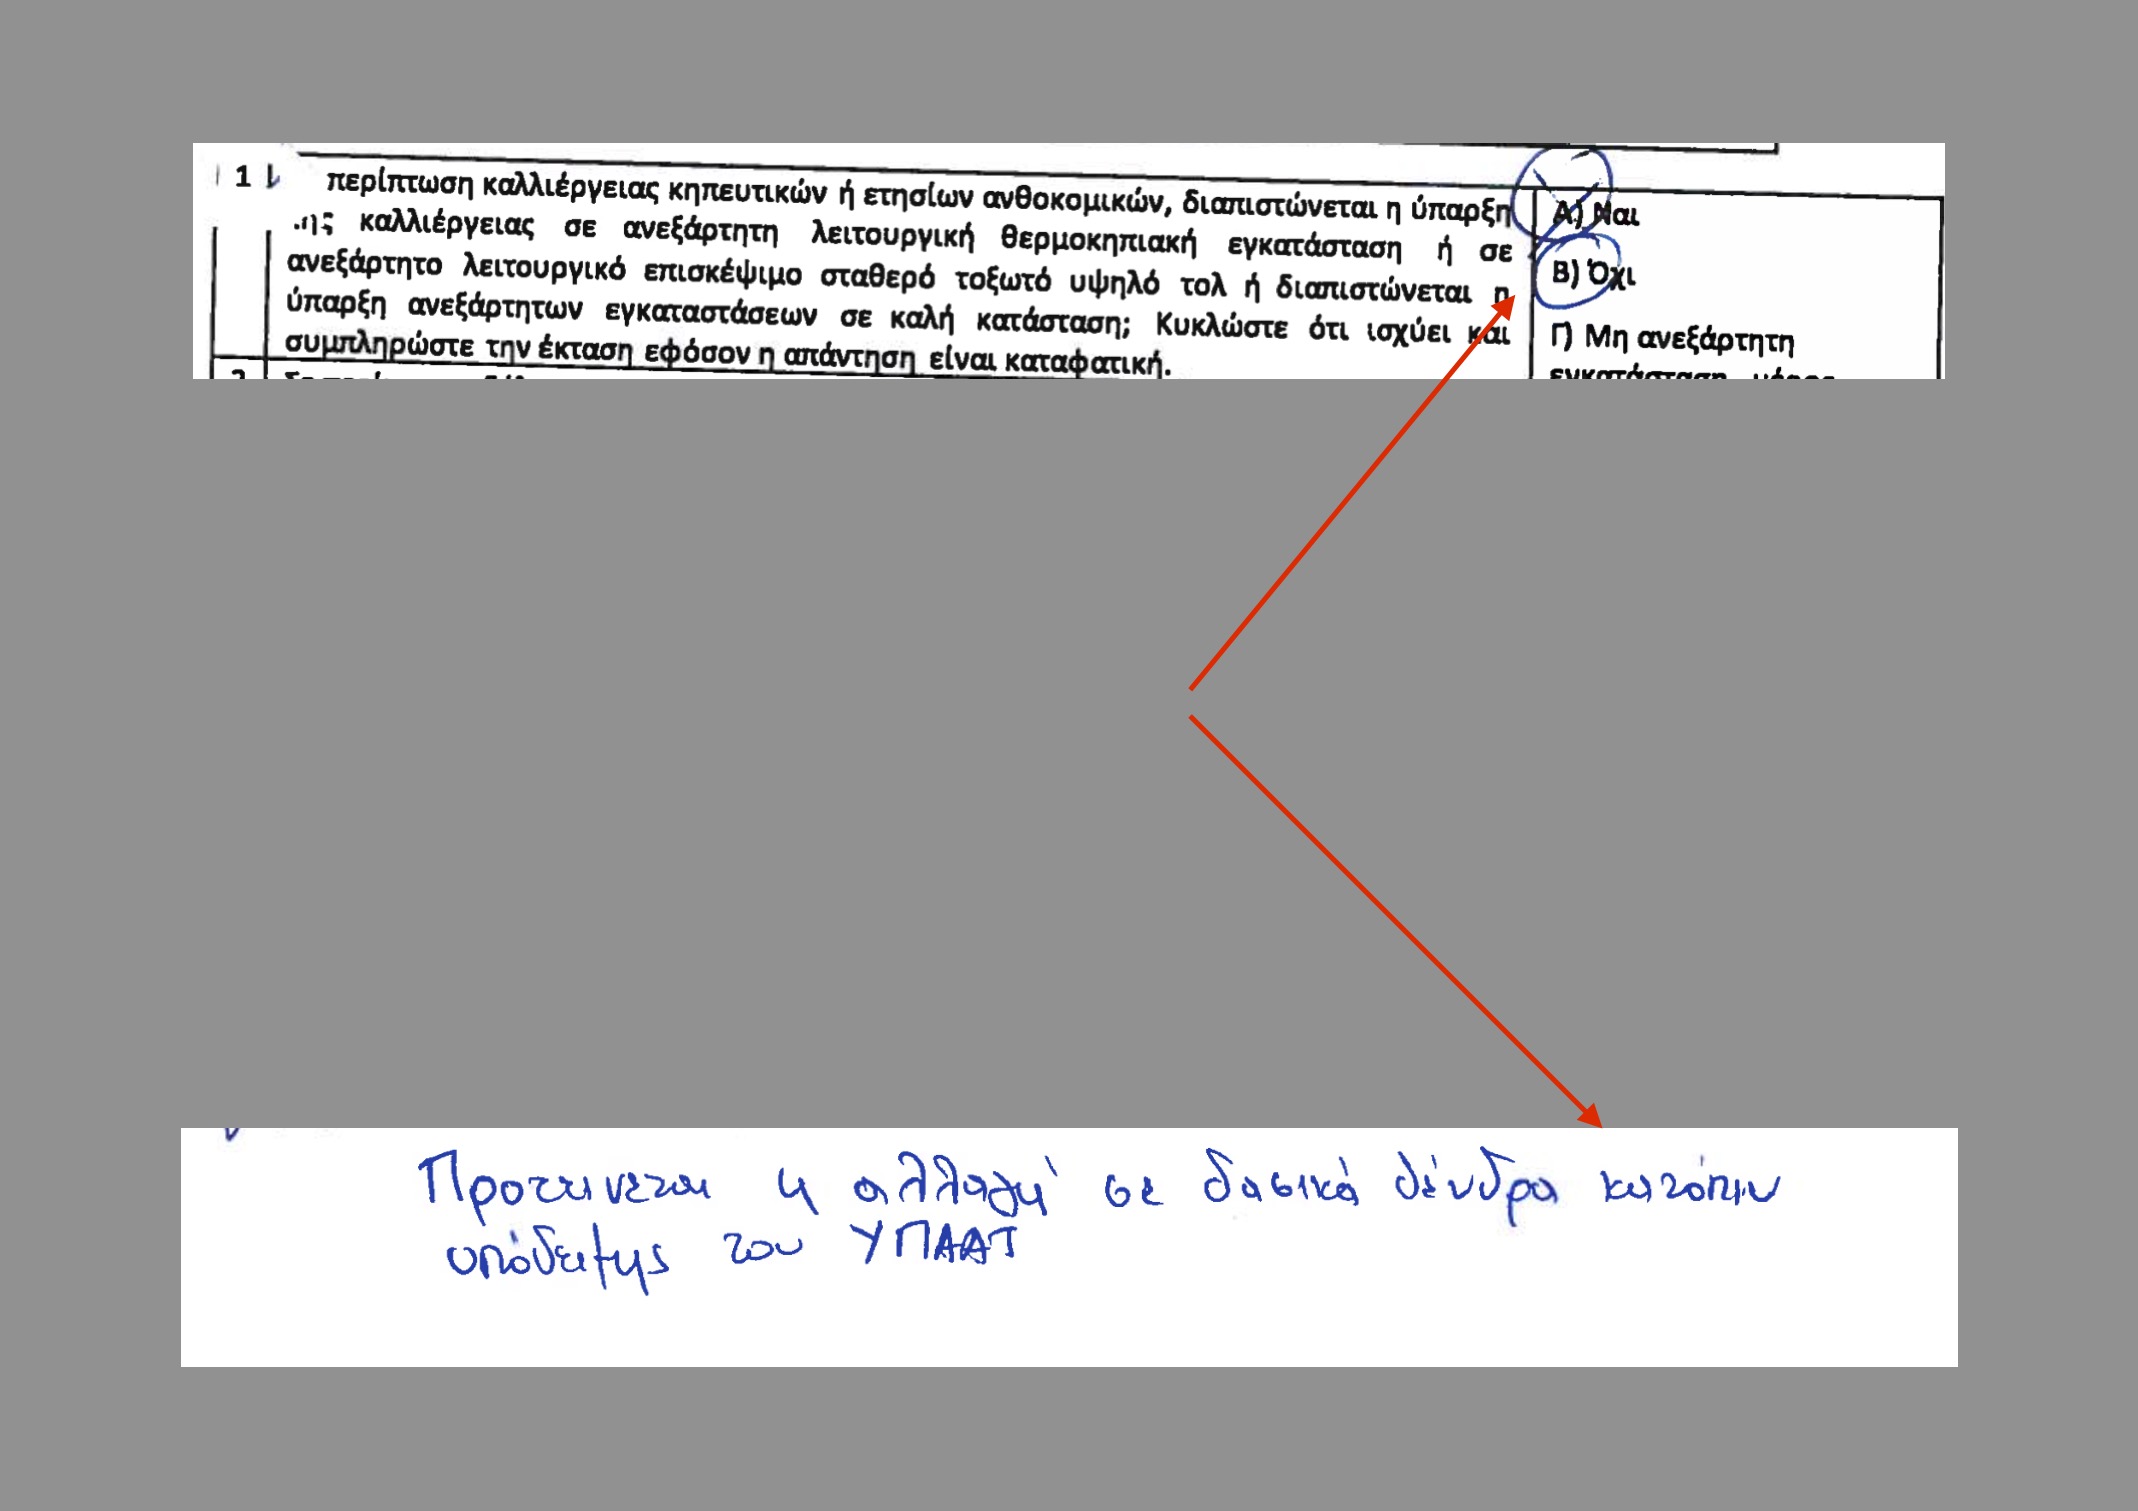 Κ. Μάλαμα: Υπηρεσιακά έγγραφα δείχνουν το μέγεθος του εμπαιγμού με τους φυτωριούχους ελάτης του Ταξιάρχη Χαλκιδικής